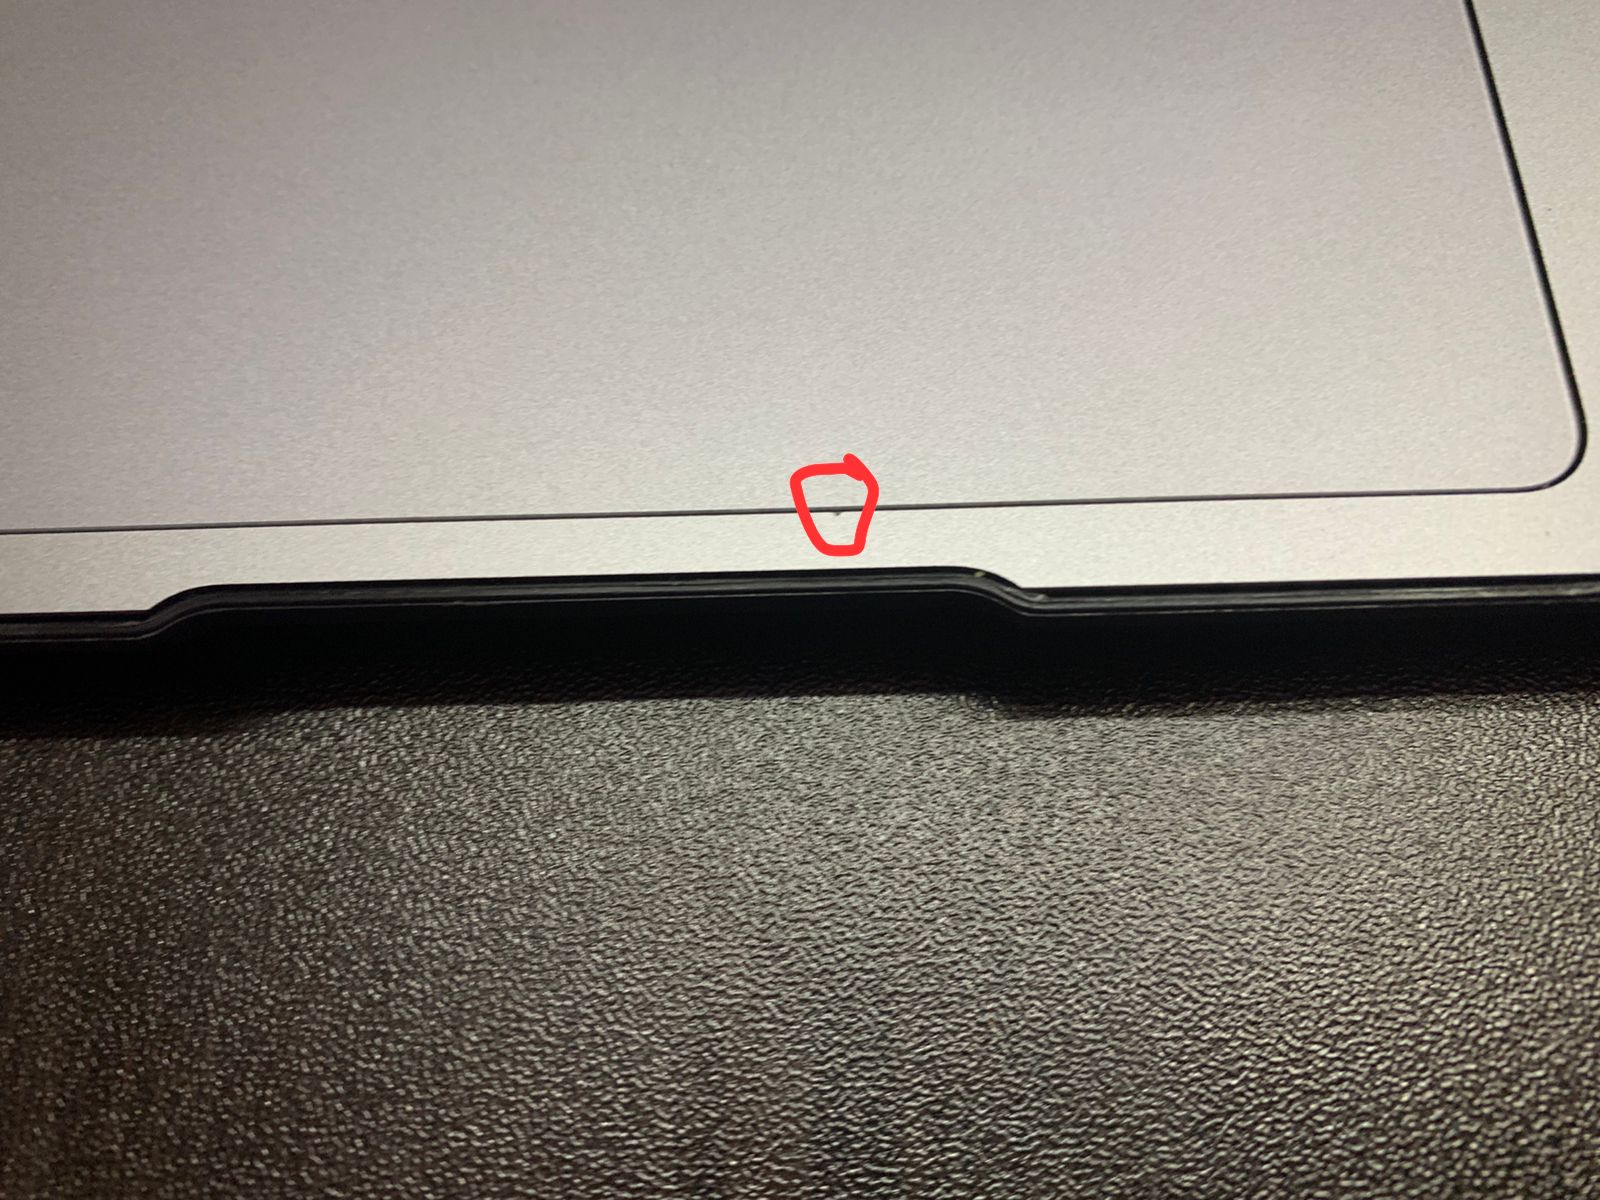 Въздухът на MacBook се счупва лесно?